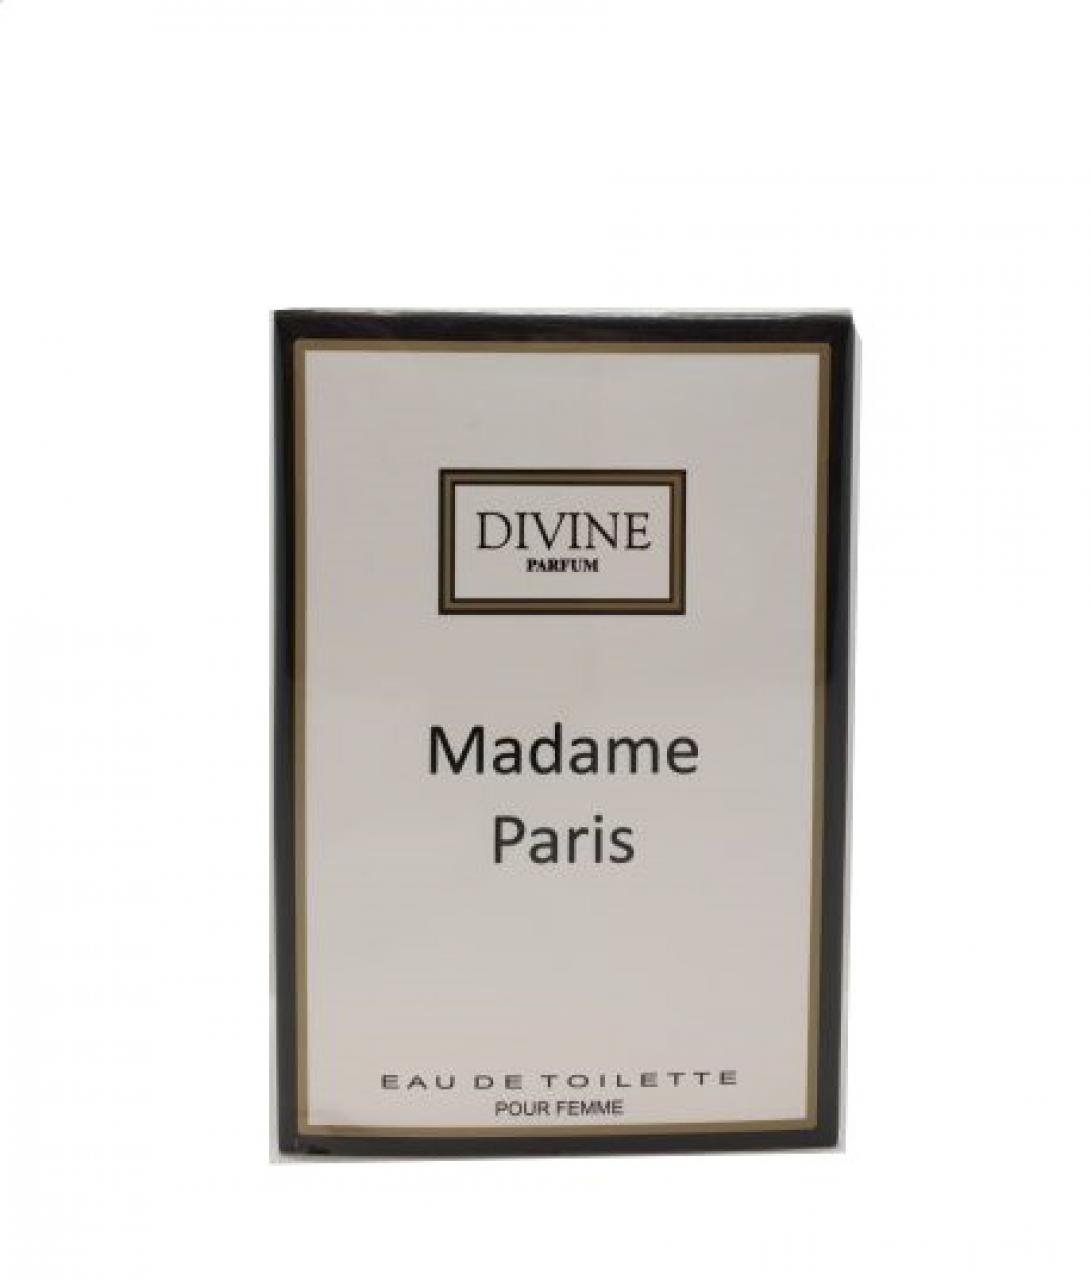 DIVINE PARFUM – MADAME PARIS